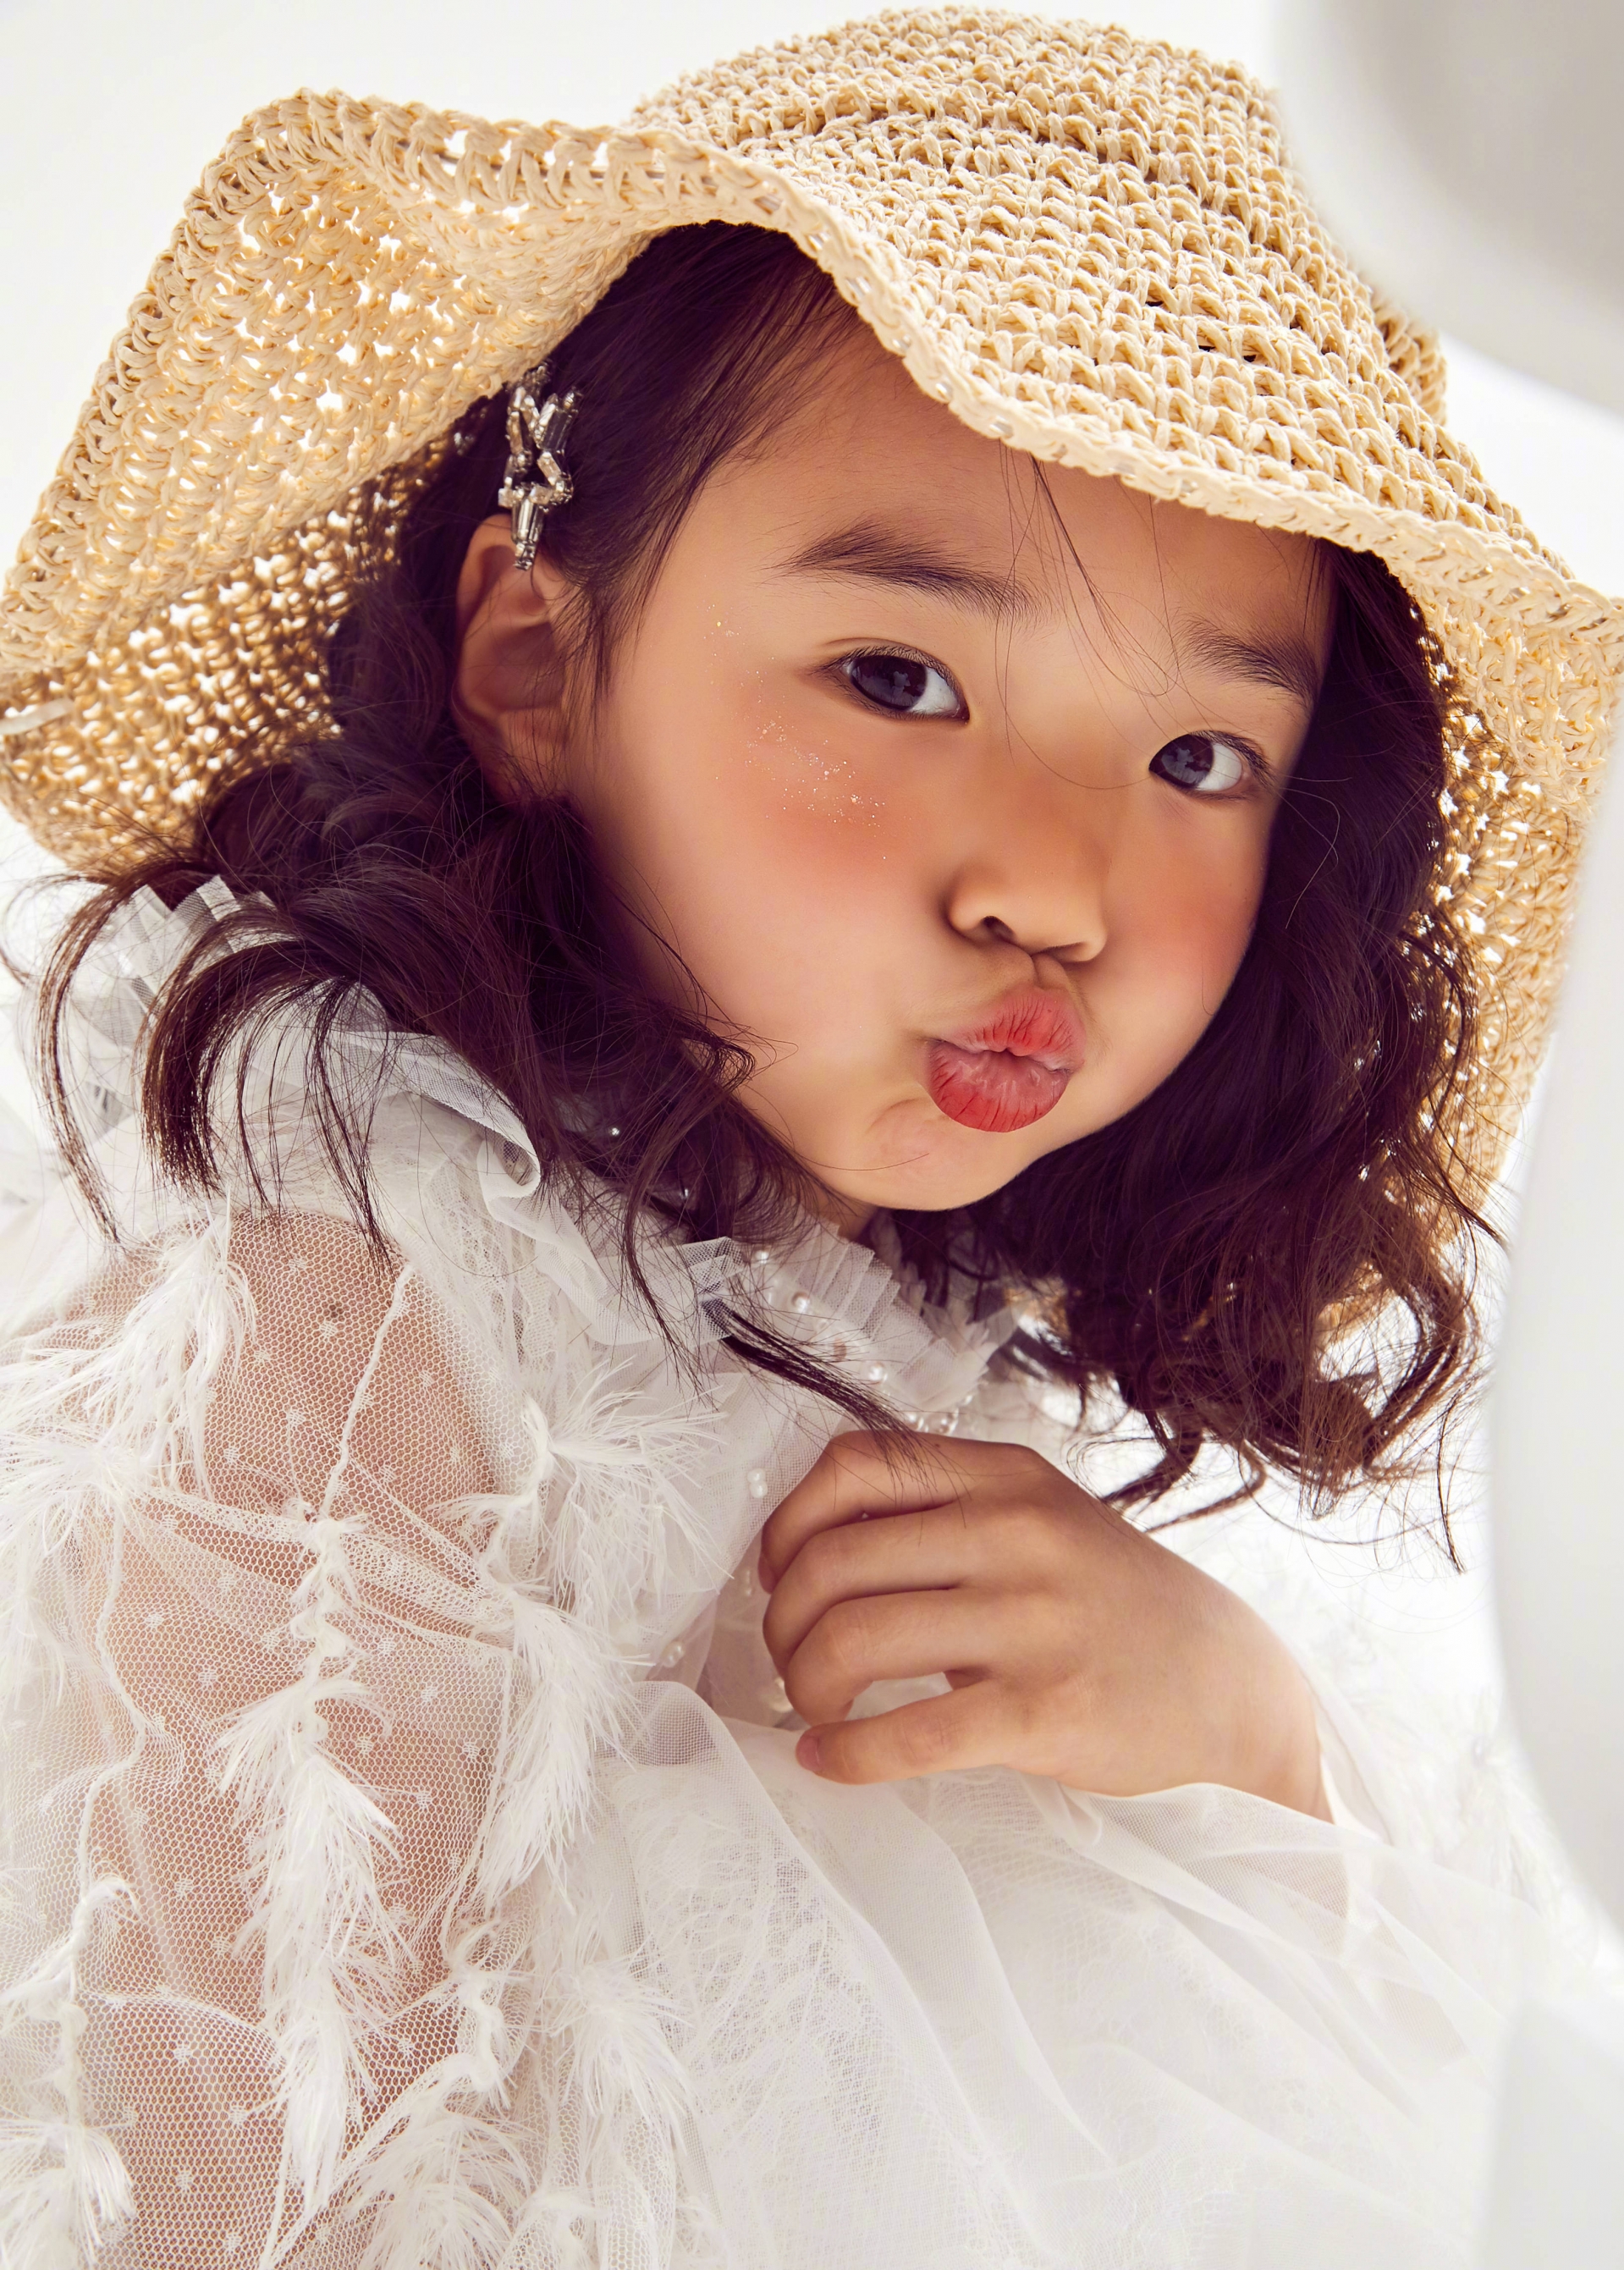 Con gái 'Điêu Thuyền' Đổng Tuyền mới 5 tuổi đã xinh tựa thiên thần, thả nhẹ bộ ảnh cũng gây sốt Weibo 6